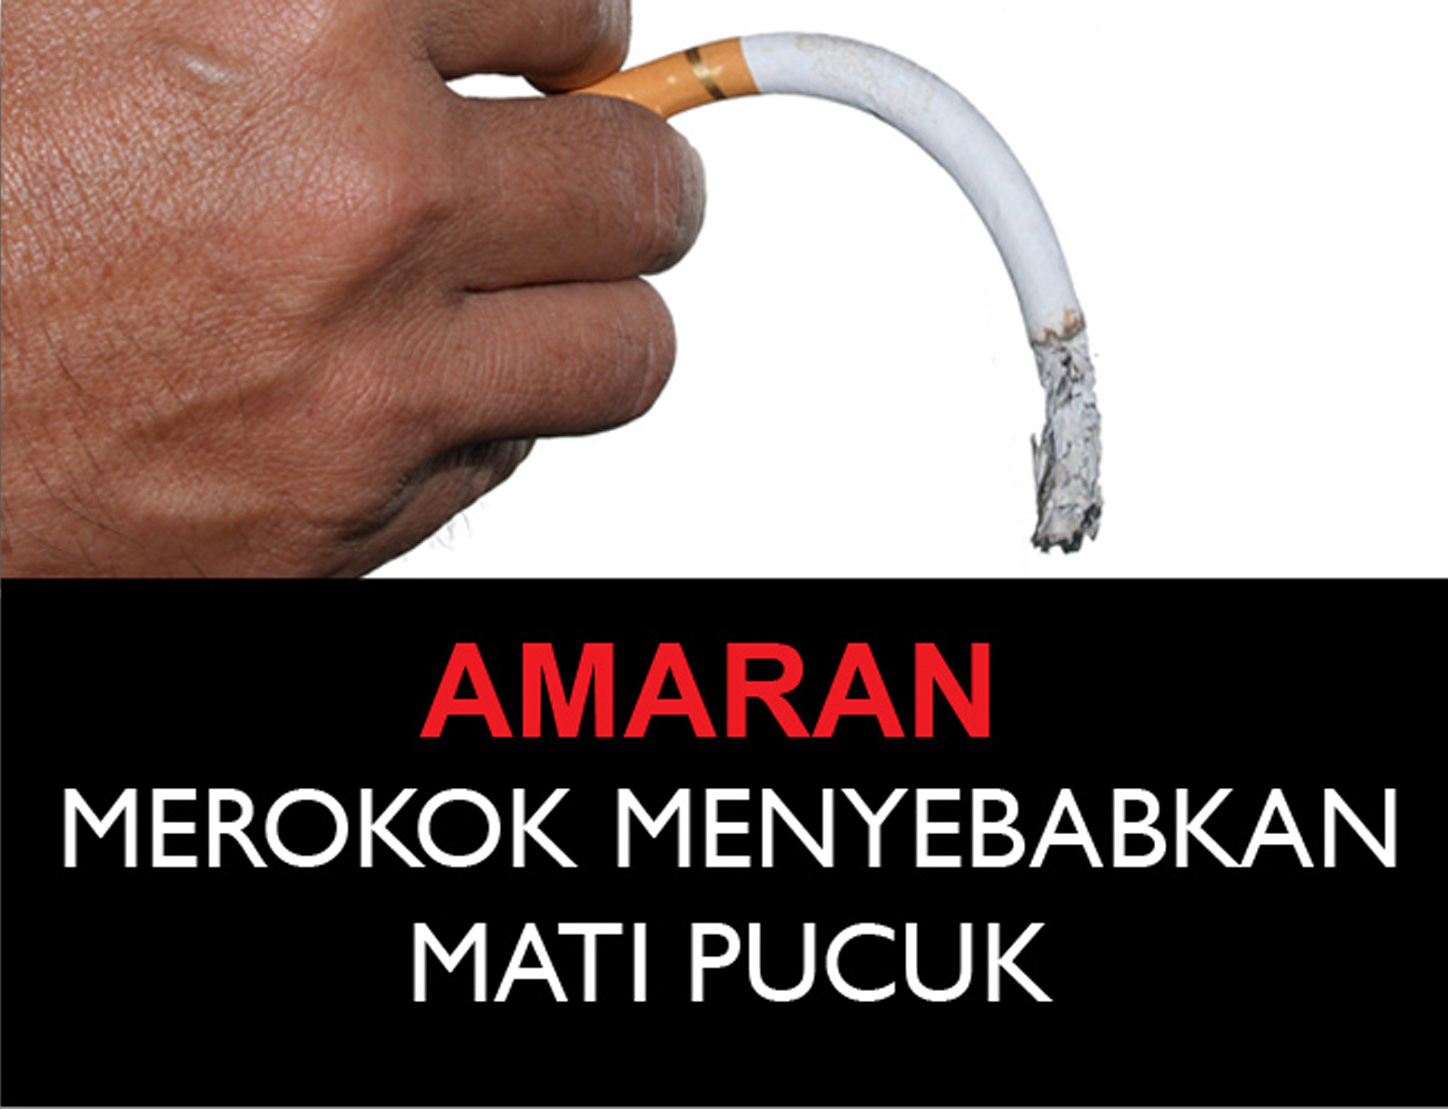 Вызывает потенцию. Курение причина импотенции. Курение вызывает импотенцию. Курение влияет на импотенцию. Курение влияет на потенцию у мужчин.